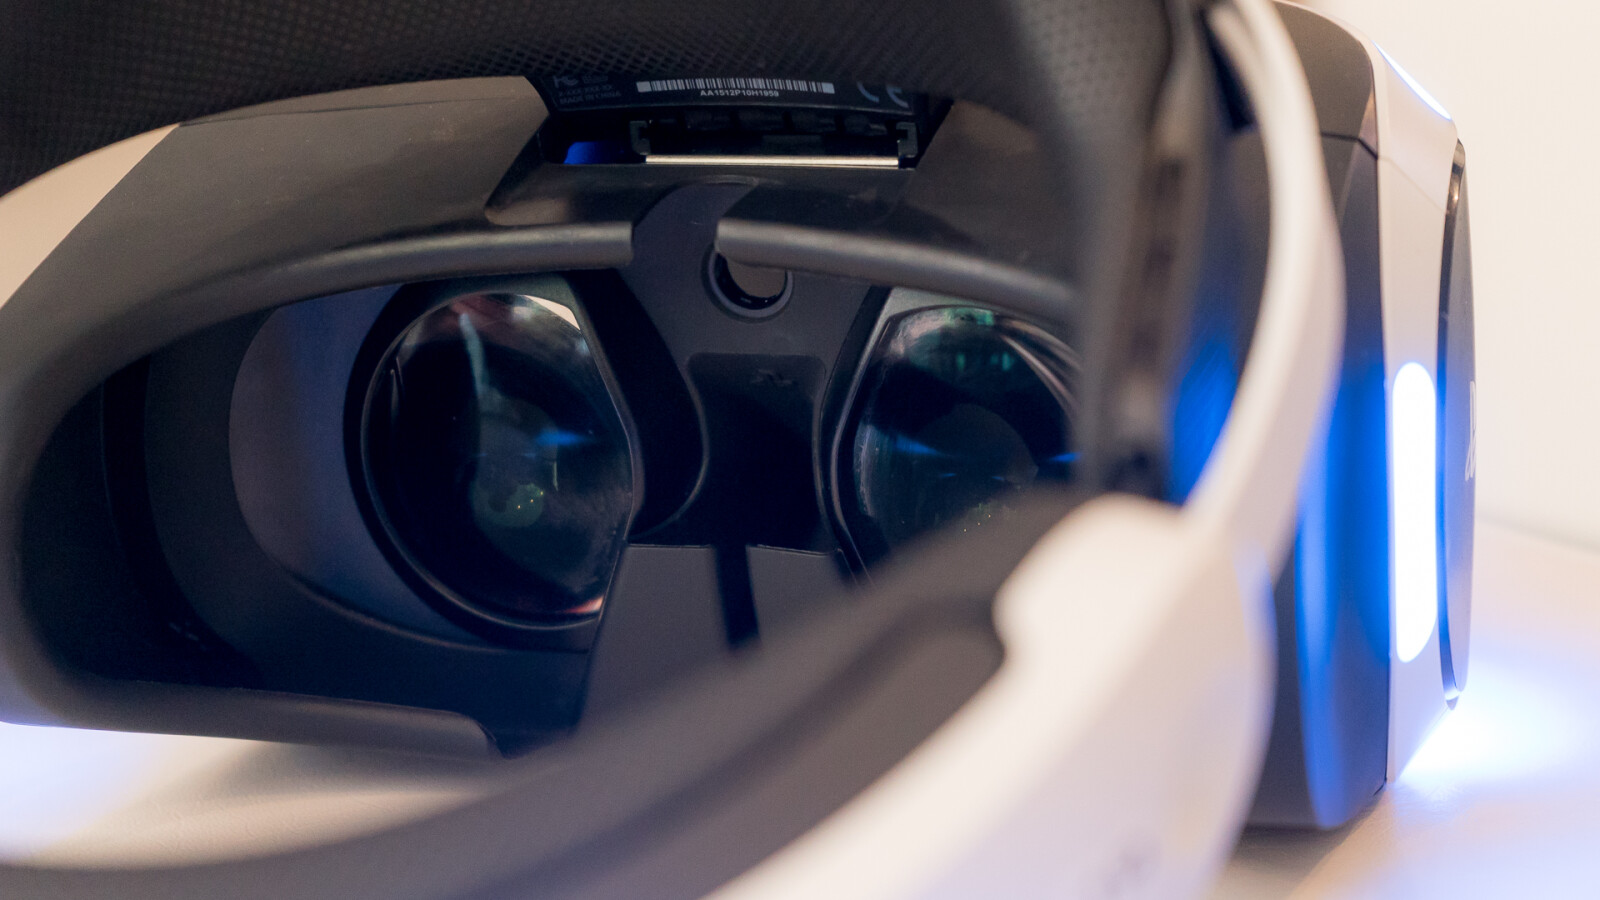 NETZWELT technische Sony die Video VR2: Daten, - | beeindrucken PlayStation erstes Spiel im enthüllt